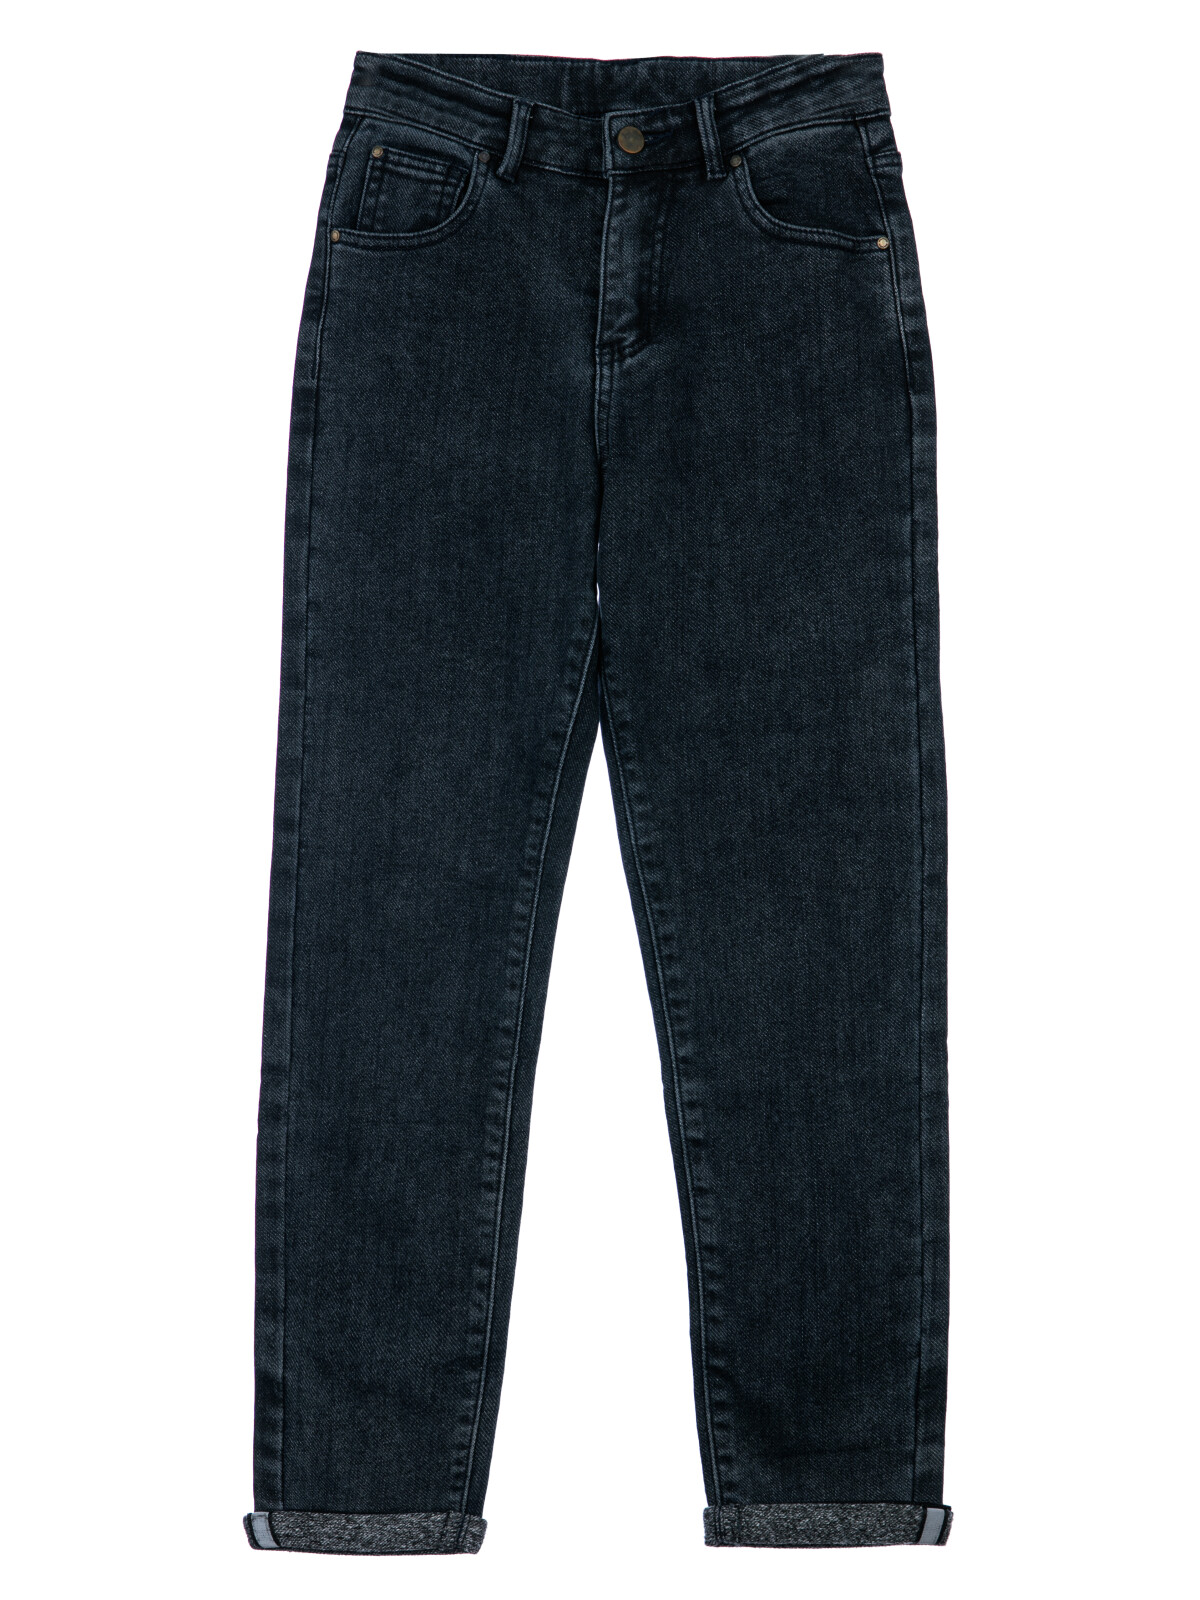 Брюки текстильные джинсовые утепленные для мальчиков PlayToday, тёмно-синий, 170